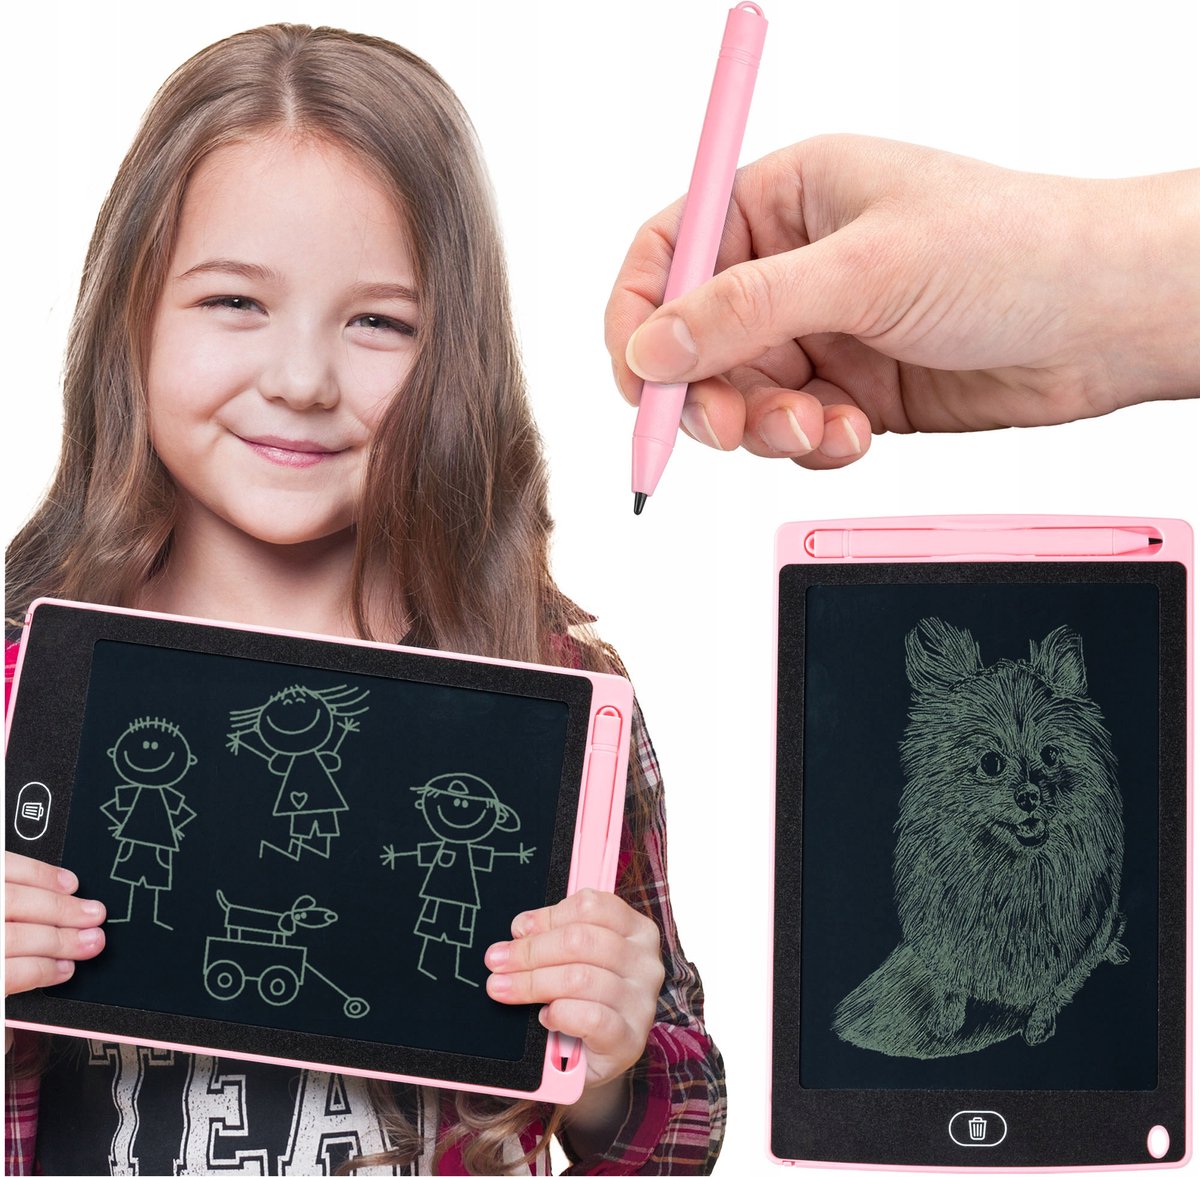 Tekenbord Kinderen - Wisbordje - Roze - Grafische Tablet - Tekentablet - 8,5 Inch - Writing Tablet - LCD - Jongens en Meisjes - Educatief - Tekenpad - Schrijfbord - Wisbord